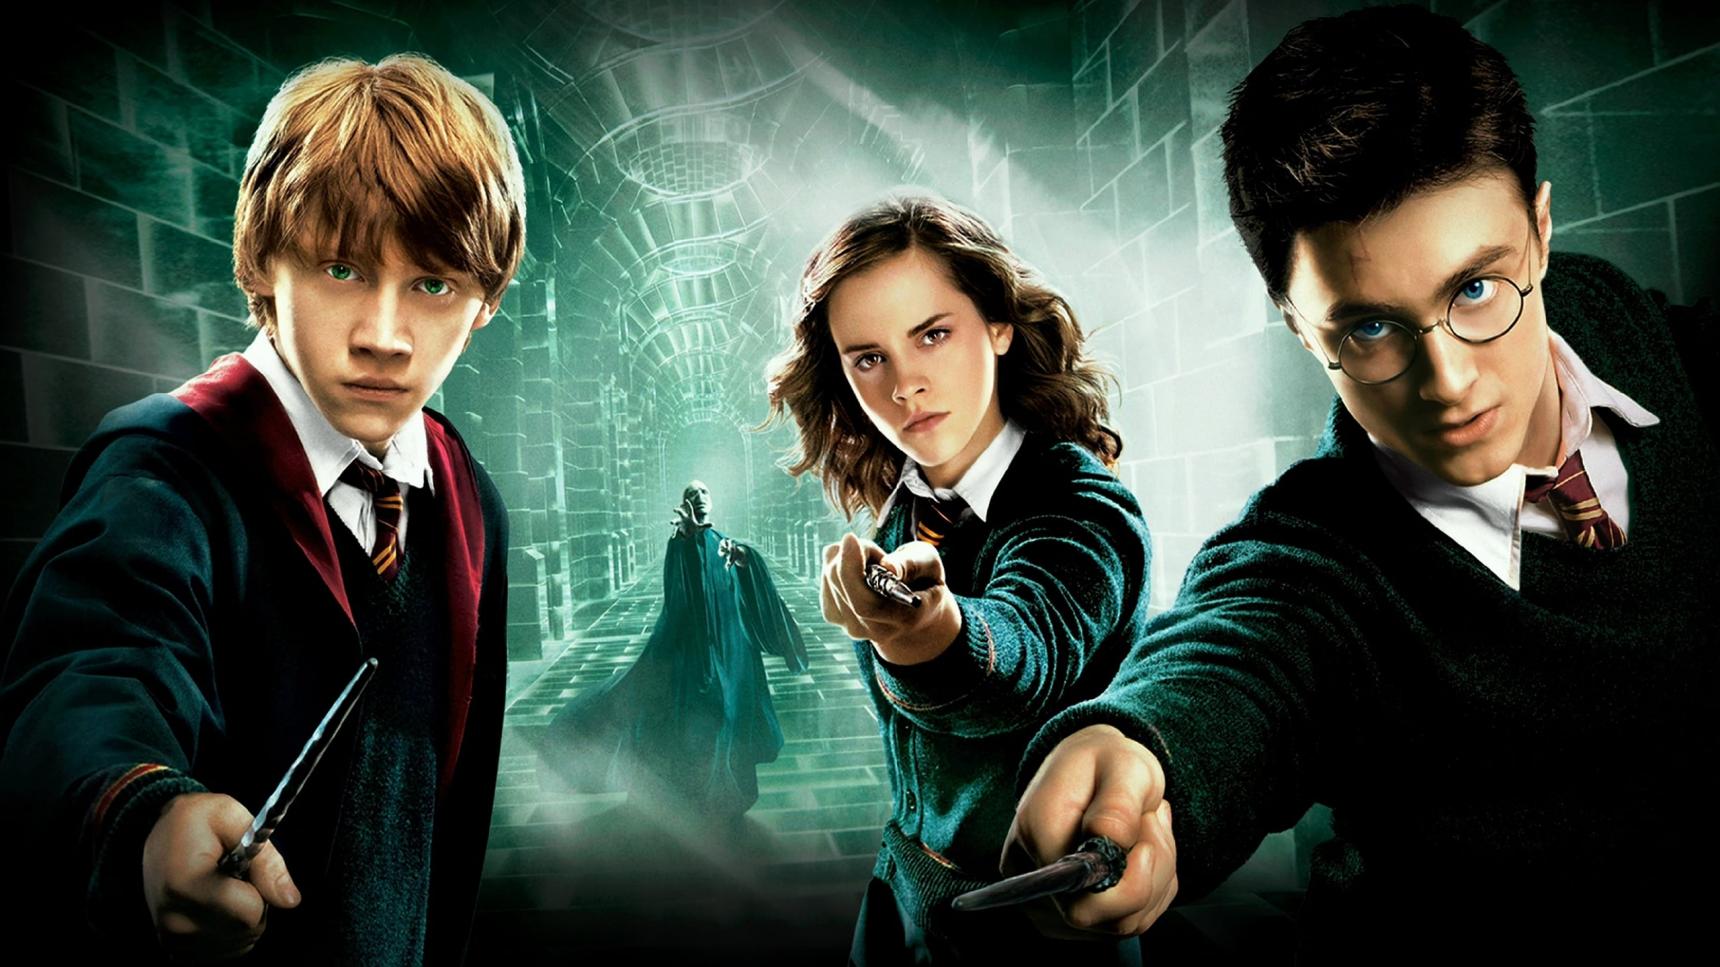 actores de Harry Potter y la Orden del Fénix